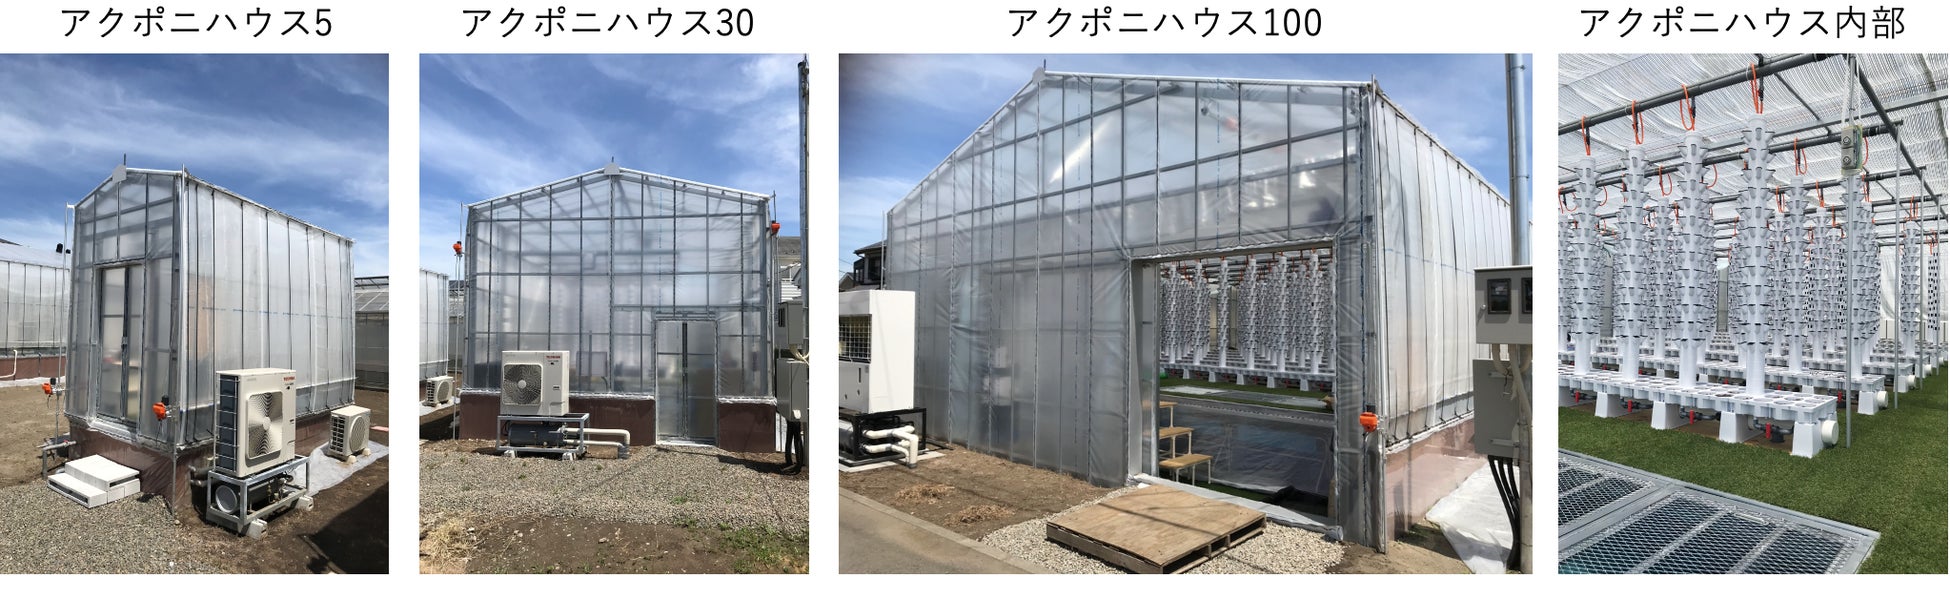 アクアポニックス農園「ふじさわアクポニビレッジ」を神奈川県藤沢市にオープンのサブ画像4